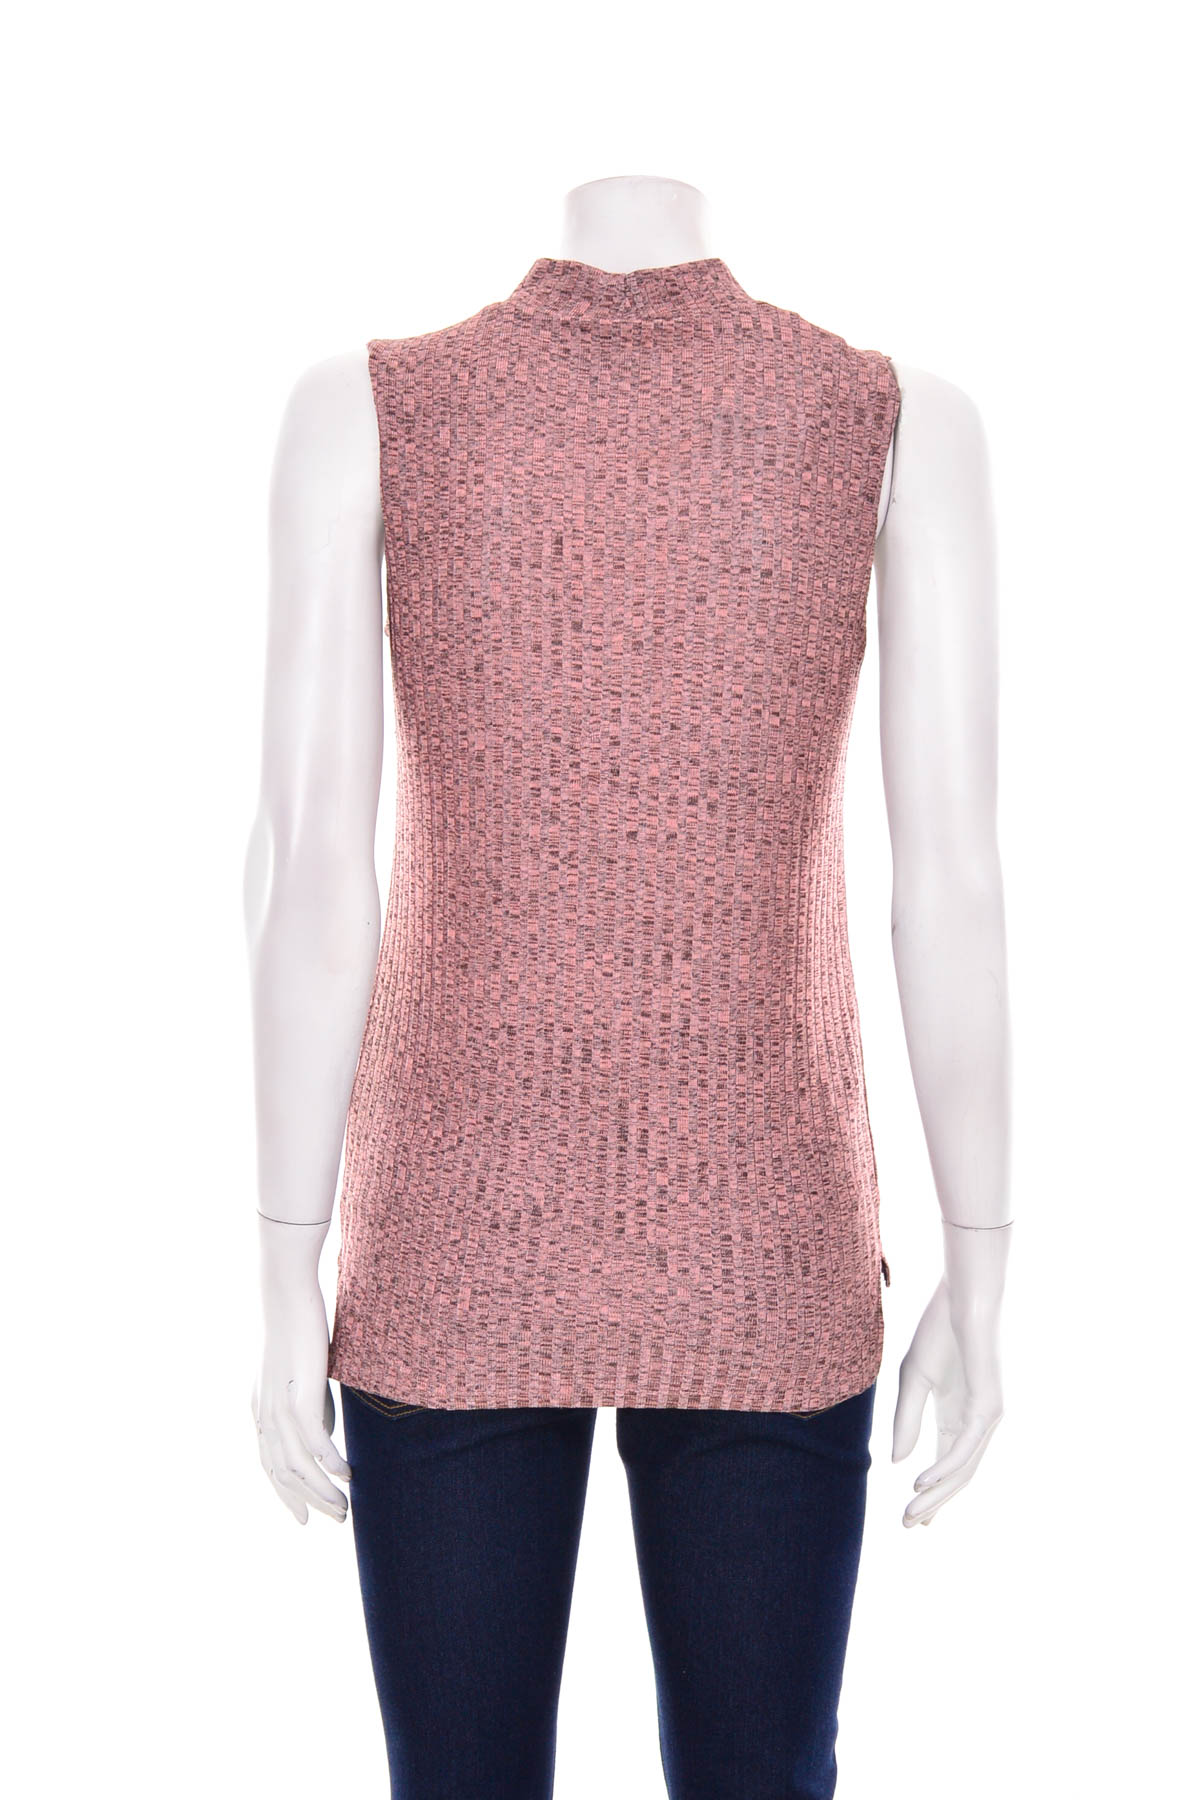 Women's sweater - Jill - 1